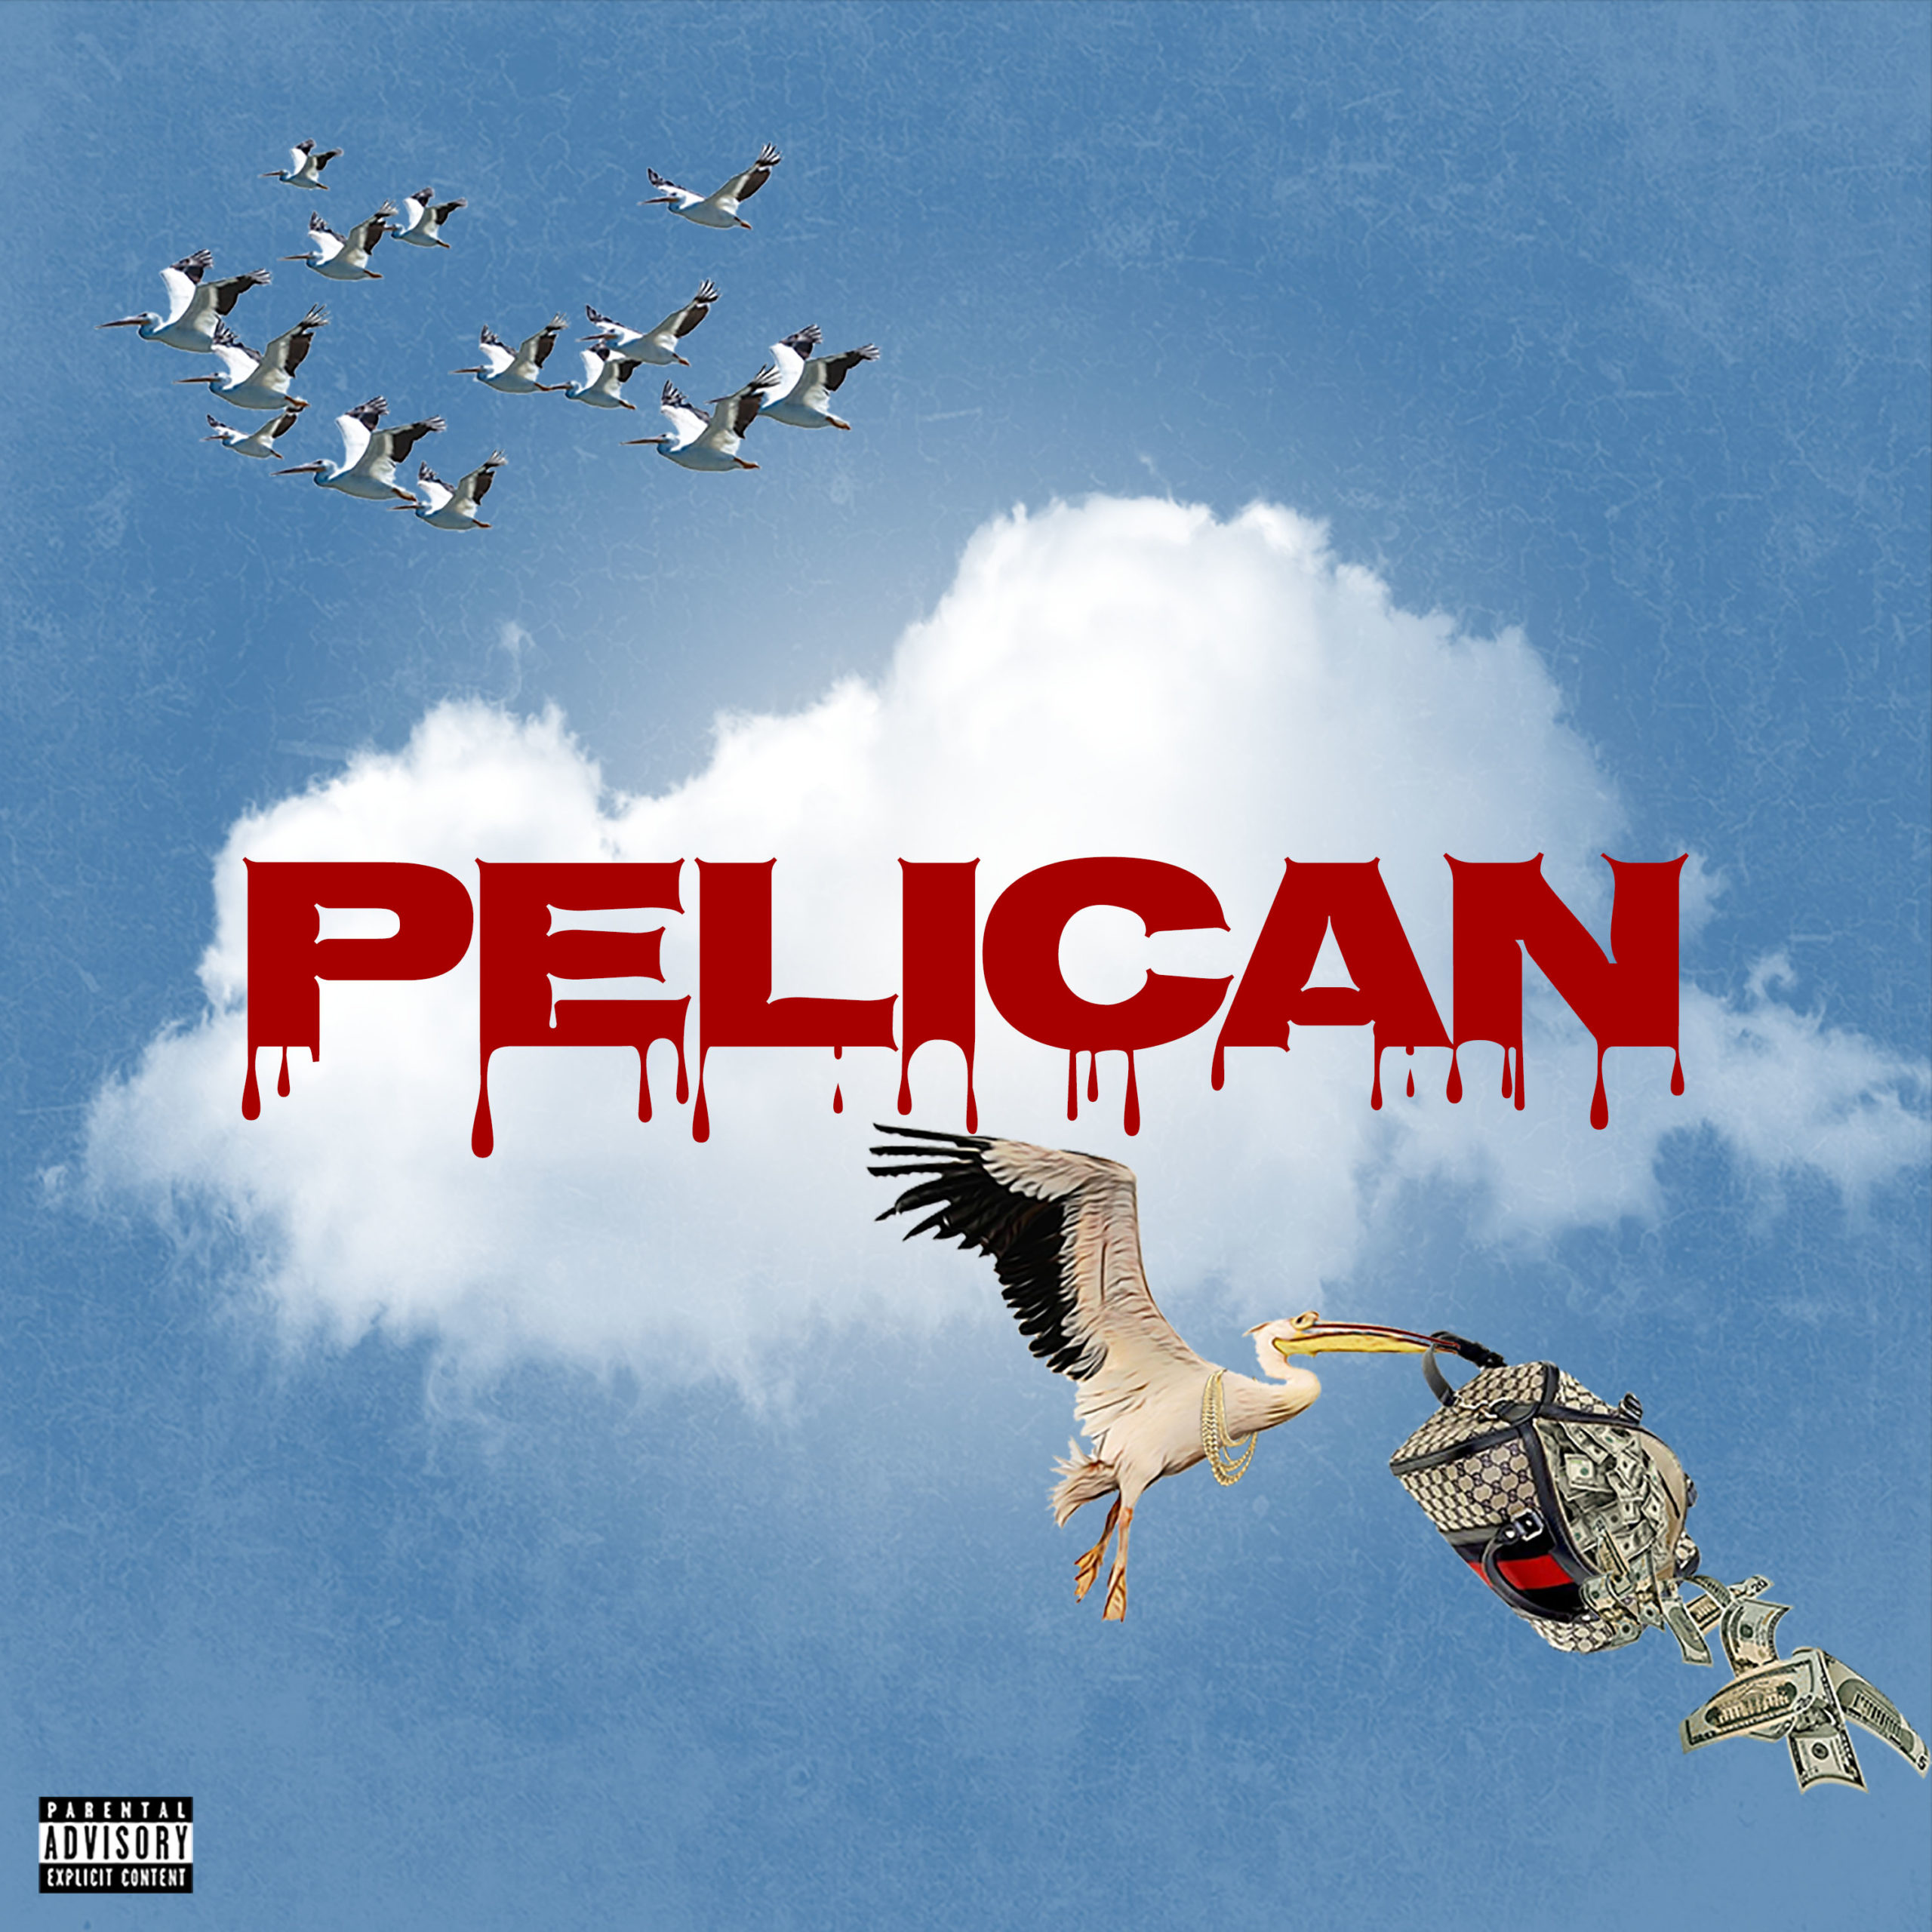 New Music! KJ Da’Donn “Pelican” Going for Airplay now! @1kjdadonn